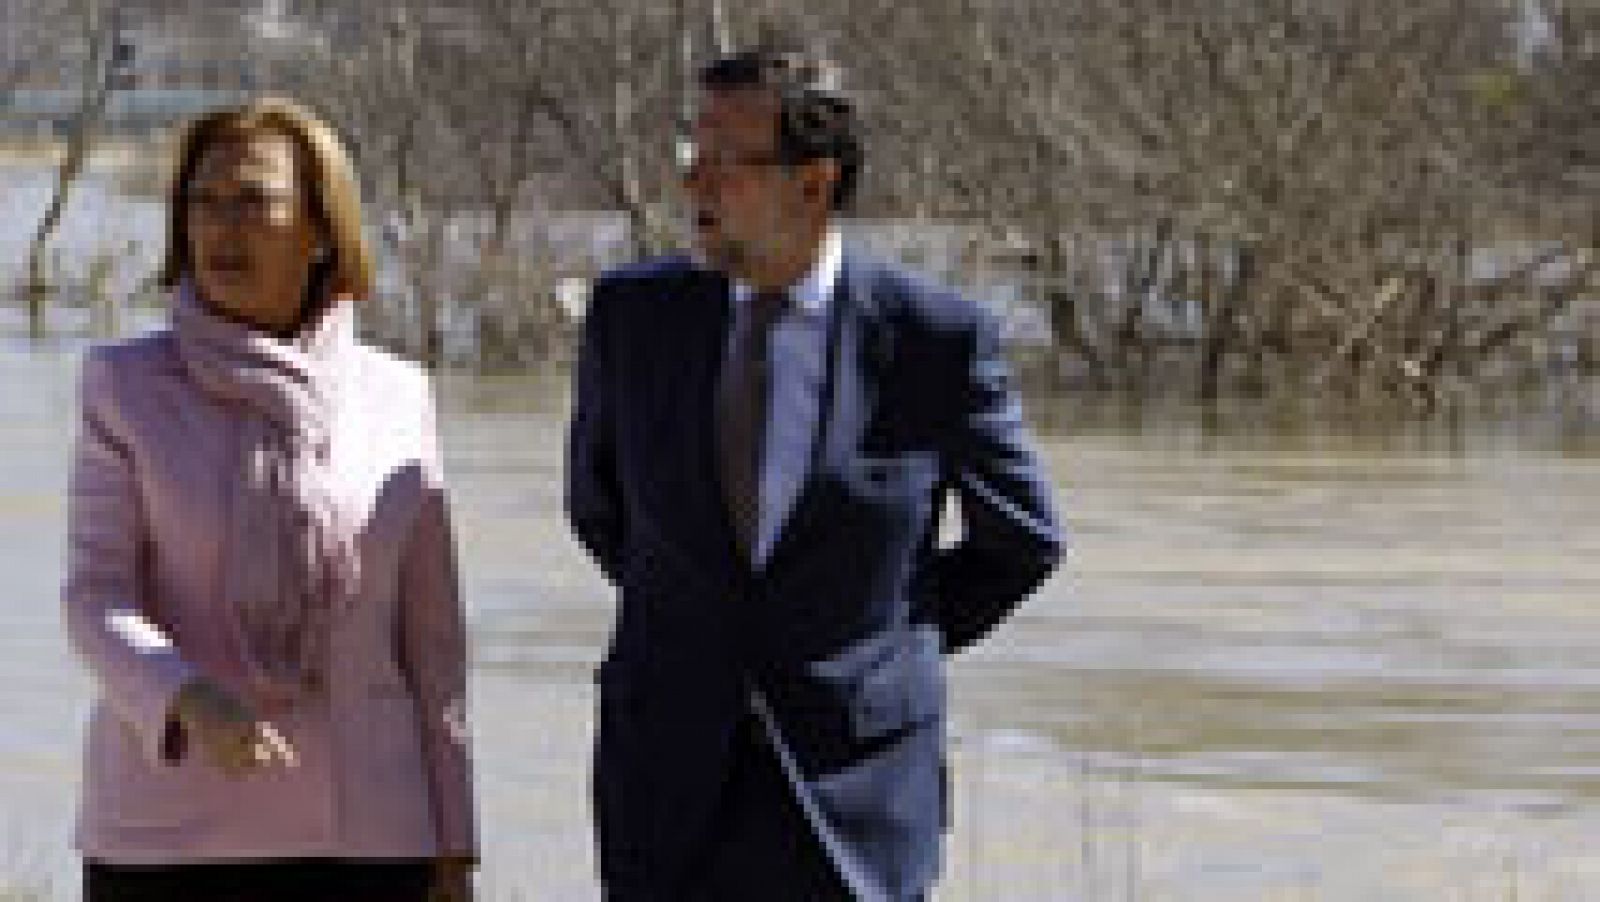 El presidente del Gobierno ha garantizado "rapidez" en las ayudas para paliar los daños por la crecida del Ebro